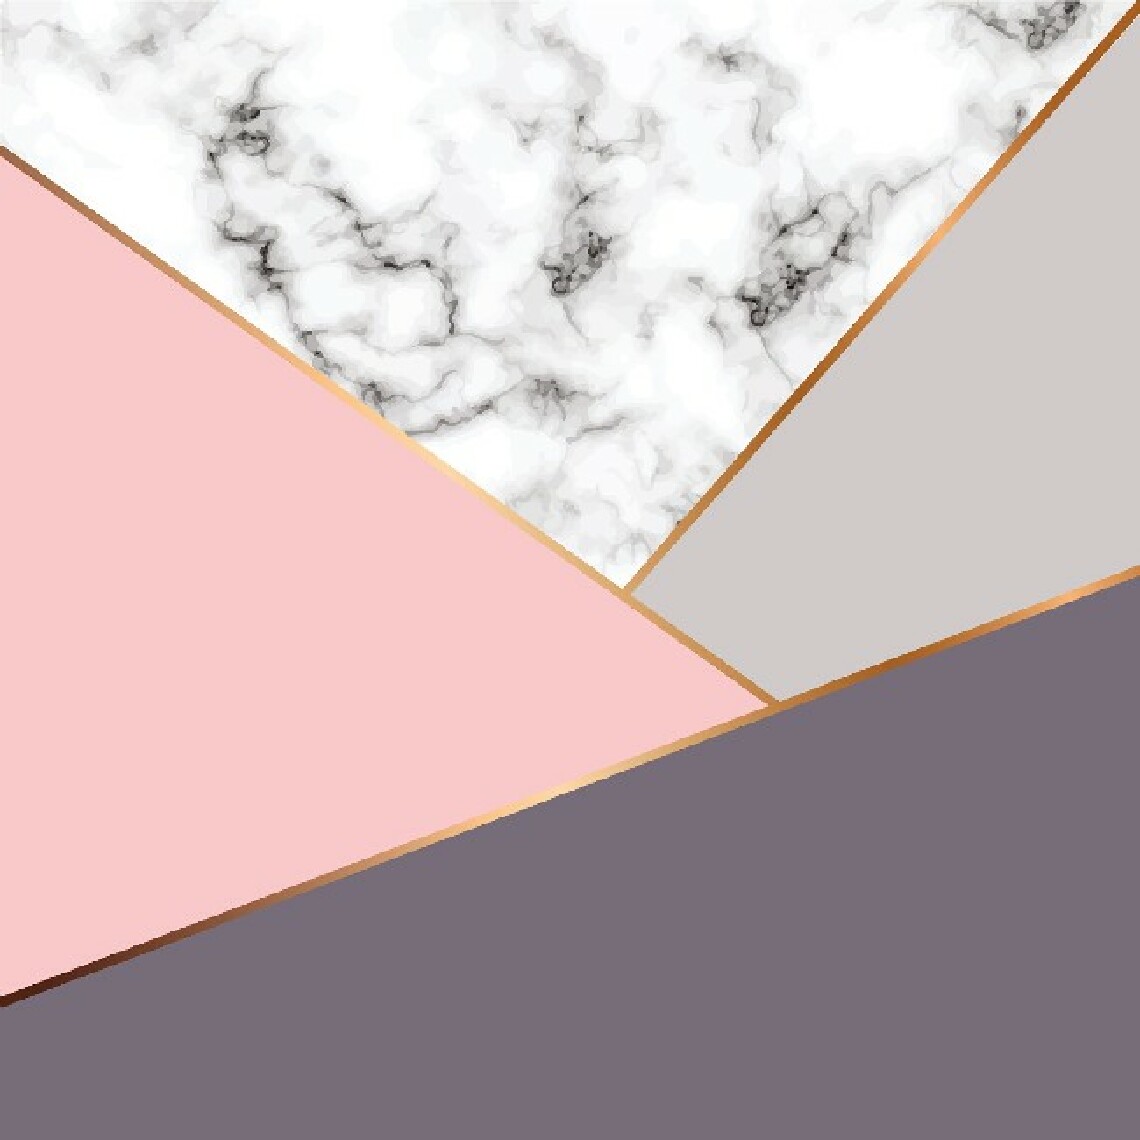 Homemania - HOMEMANIA Tapis Imprimé Pink Of Happiness 2 - Géométrique - Décoration de Maison - Antidérapant - Pour Salon, séjour, chambre à coucher - Multicolore en Polyester, Coton, 100 x 150 cm - Tapis